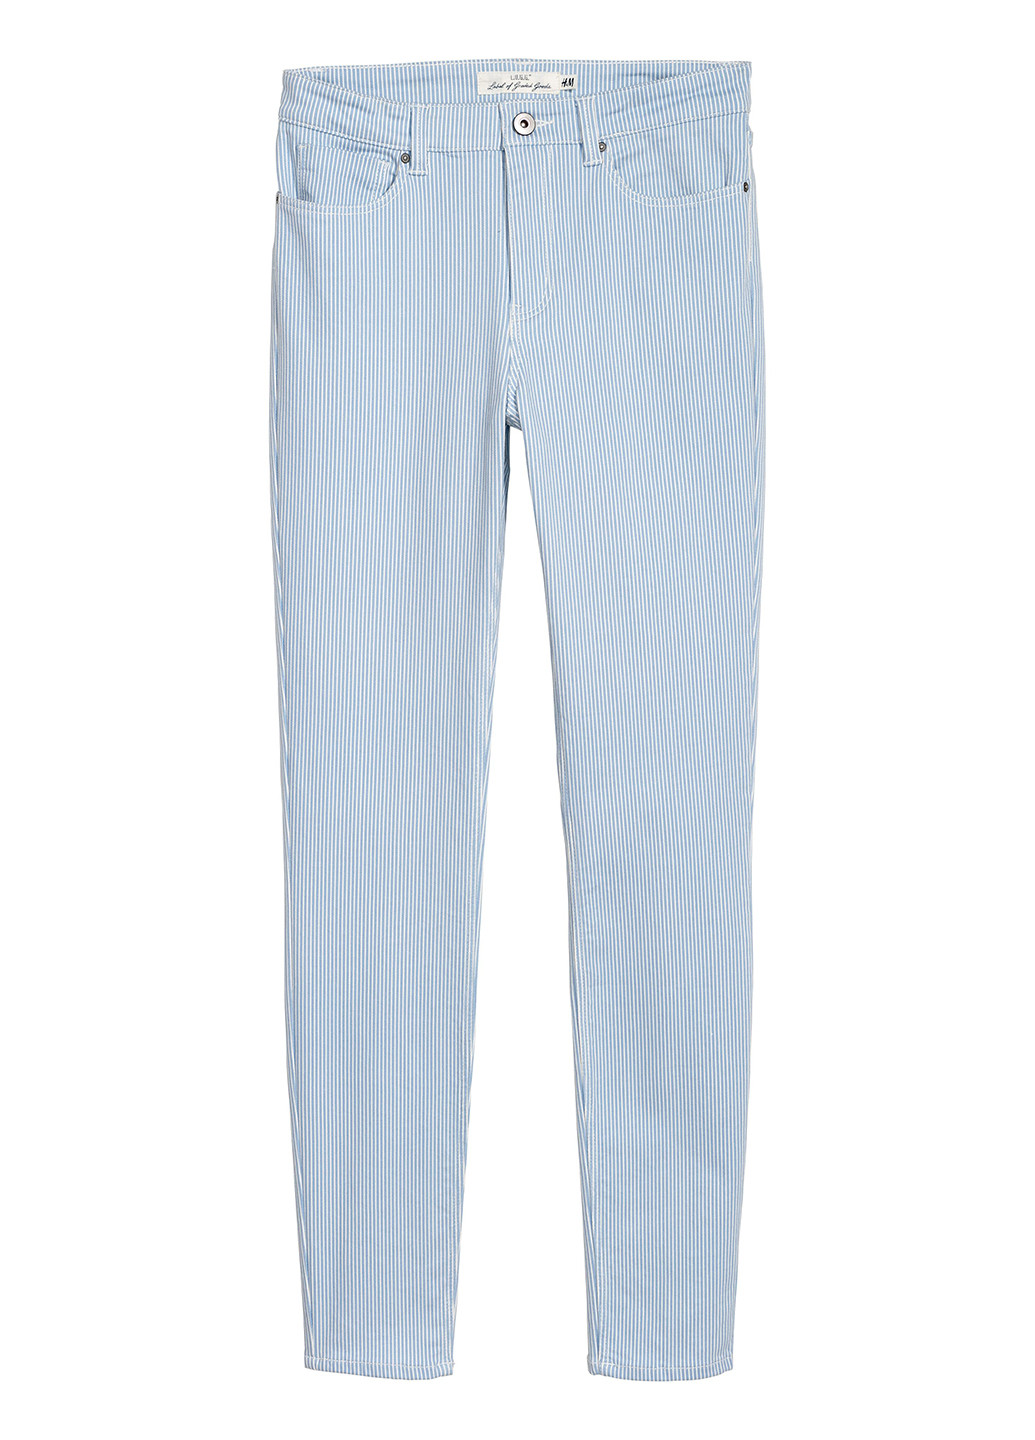 Голубые демисезонные зауженные джинсы H&M